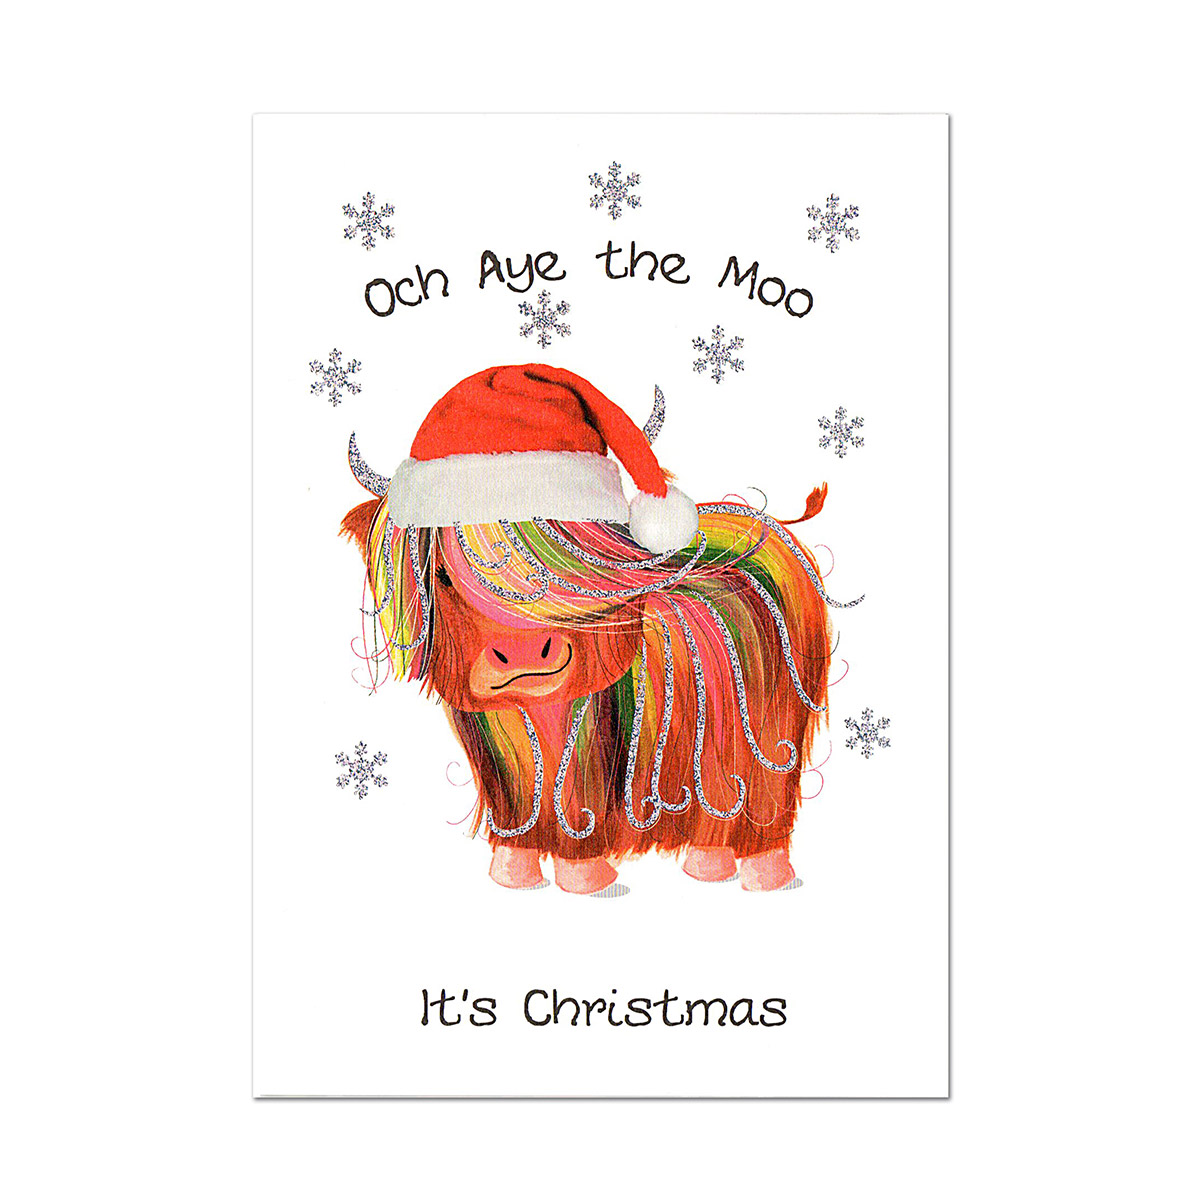 Och Aye the Moo It's Christmas - Wee Wishes Weihnachtskarte aus Schottland